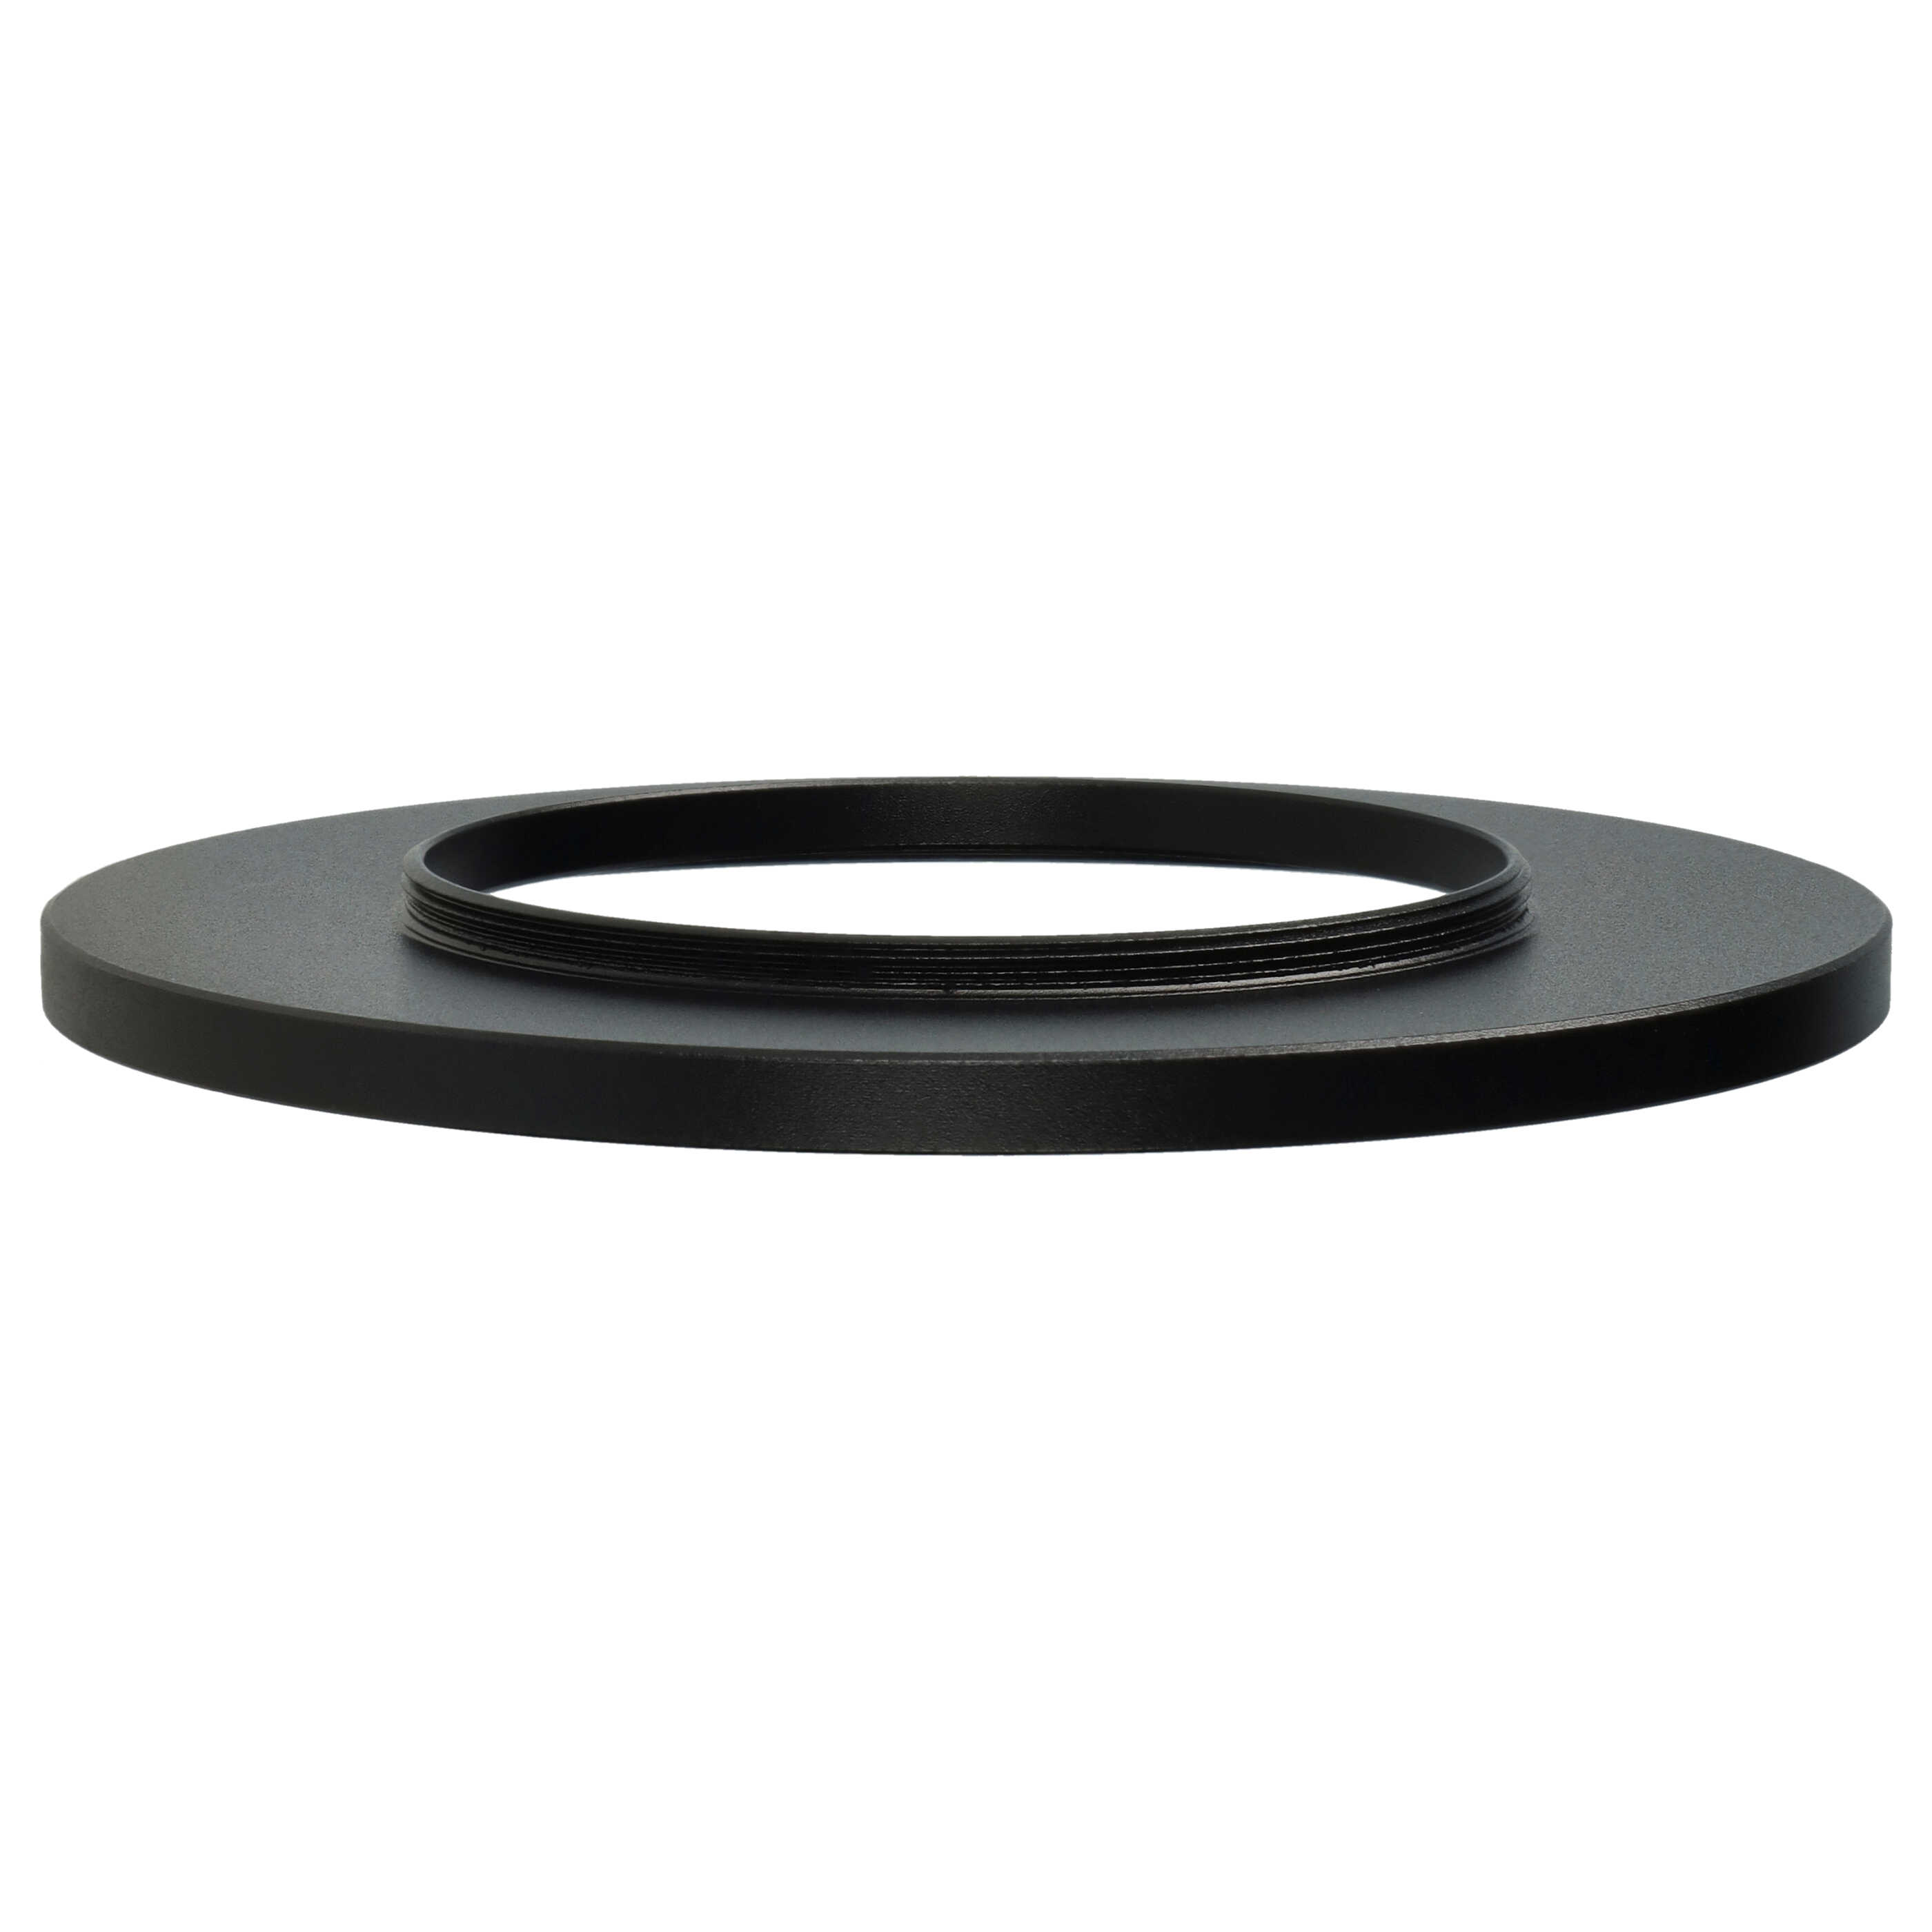 Step-Up-Ring Adapter 52 mm auf 82 mm passend für diverse Kamera-Objektive - Filteradapter